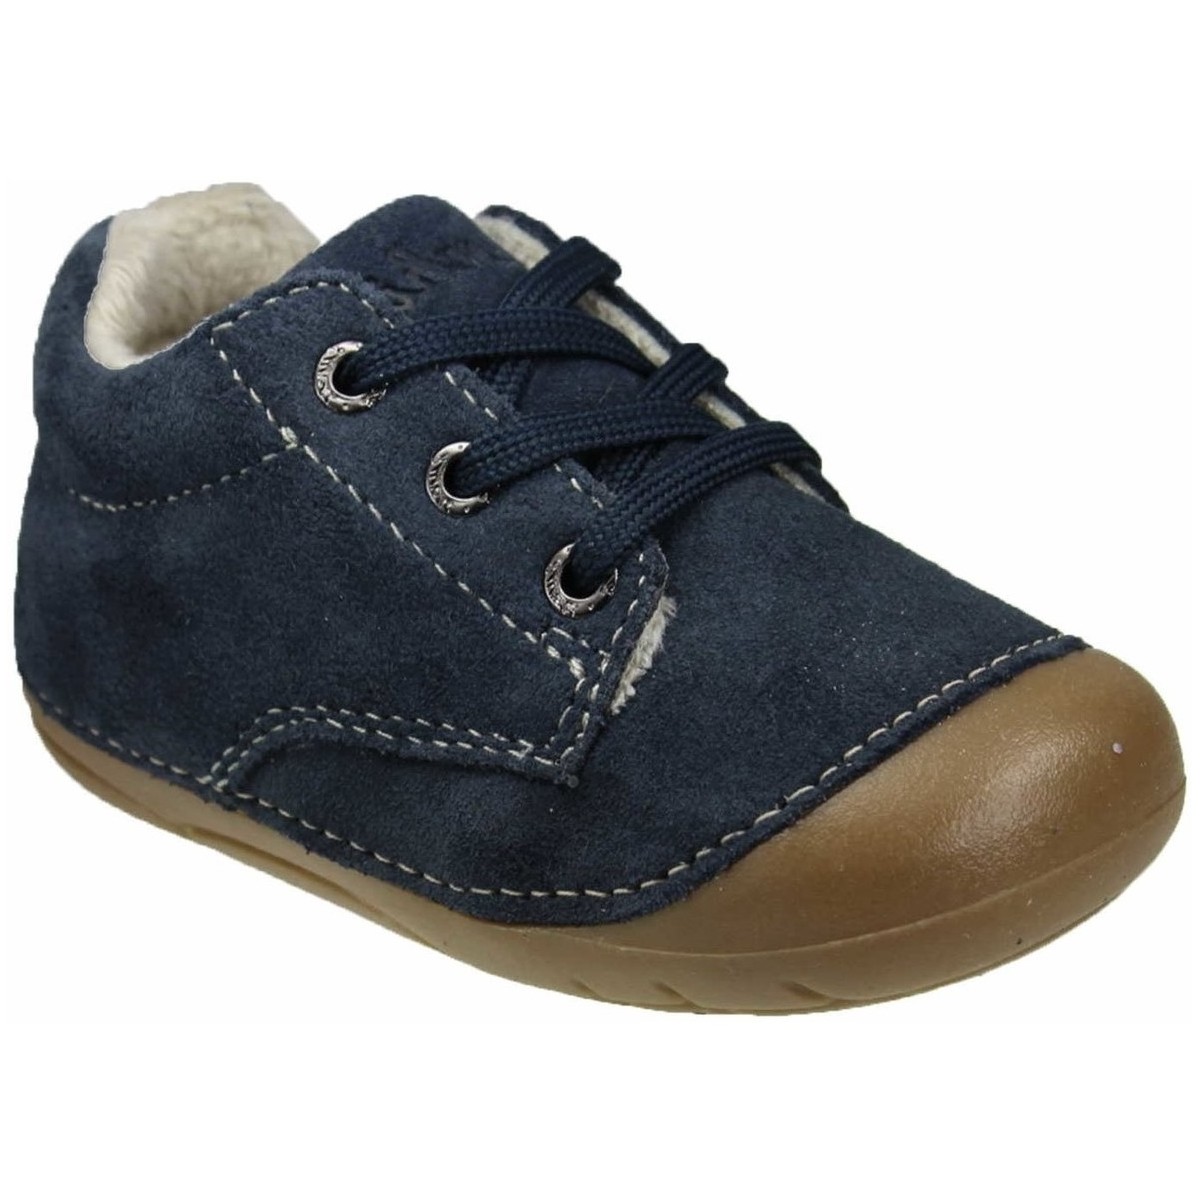 Schuhe Jungen Babyschuhe Lurchi Schnuerschuhe navy (dunkel) 33-13978-22 Flori Blau